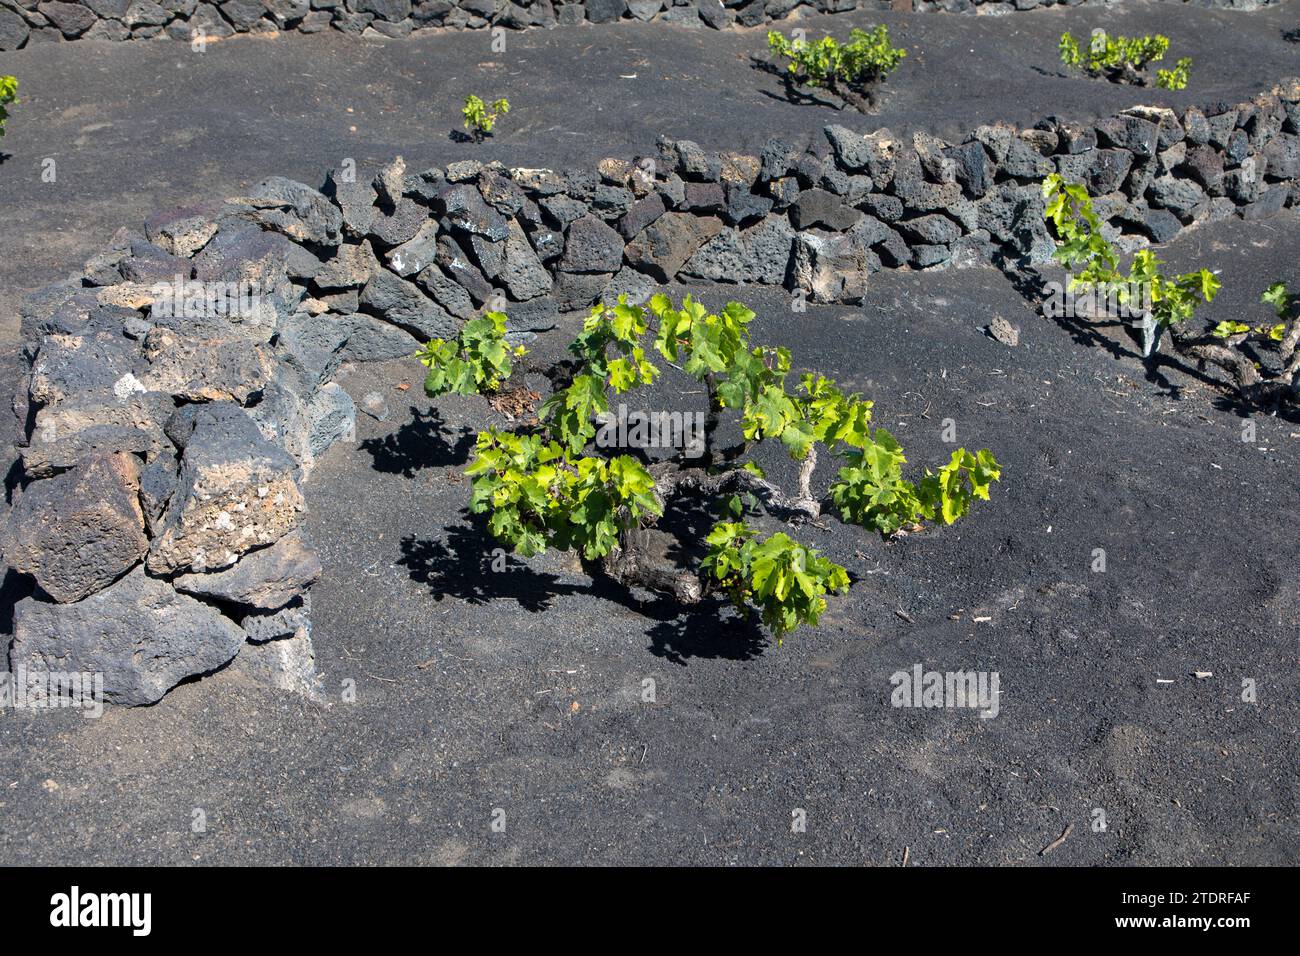 Weinreben auf schwarzem vulkanischem Boden in den Weinbergen von La Geria Azinast wolkenlos blauem Himmel. Lanzarote, Kanarische Inseln, Spanien. Nahaufnahme. Stockfoto